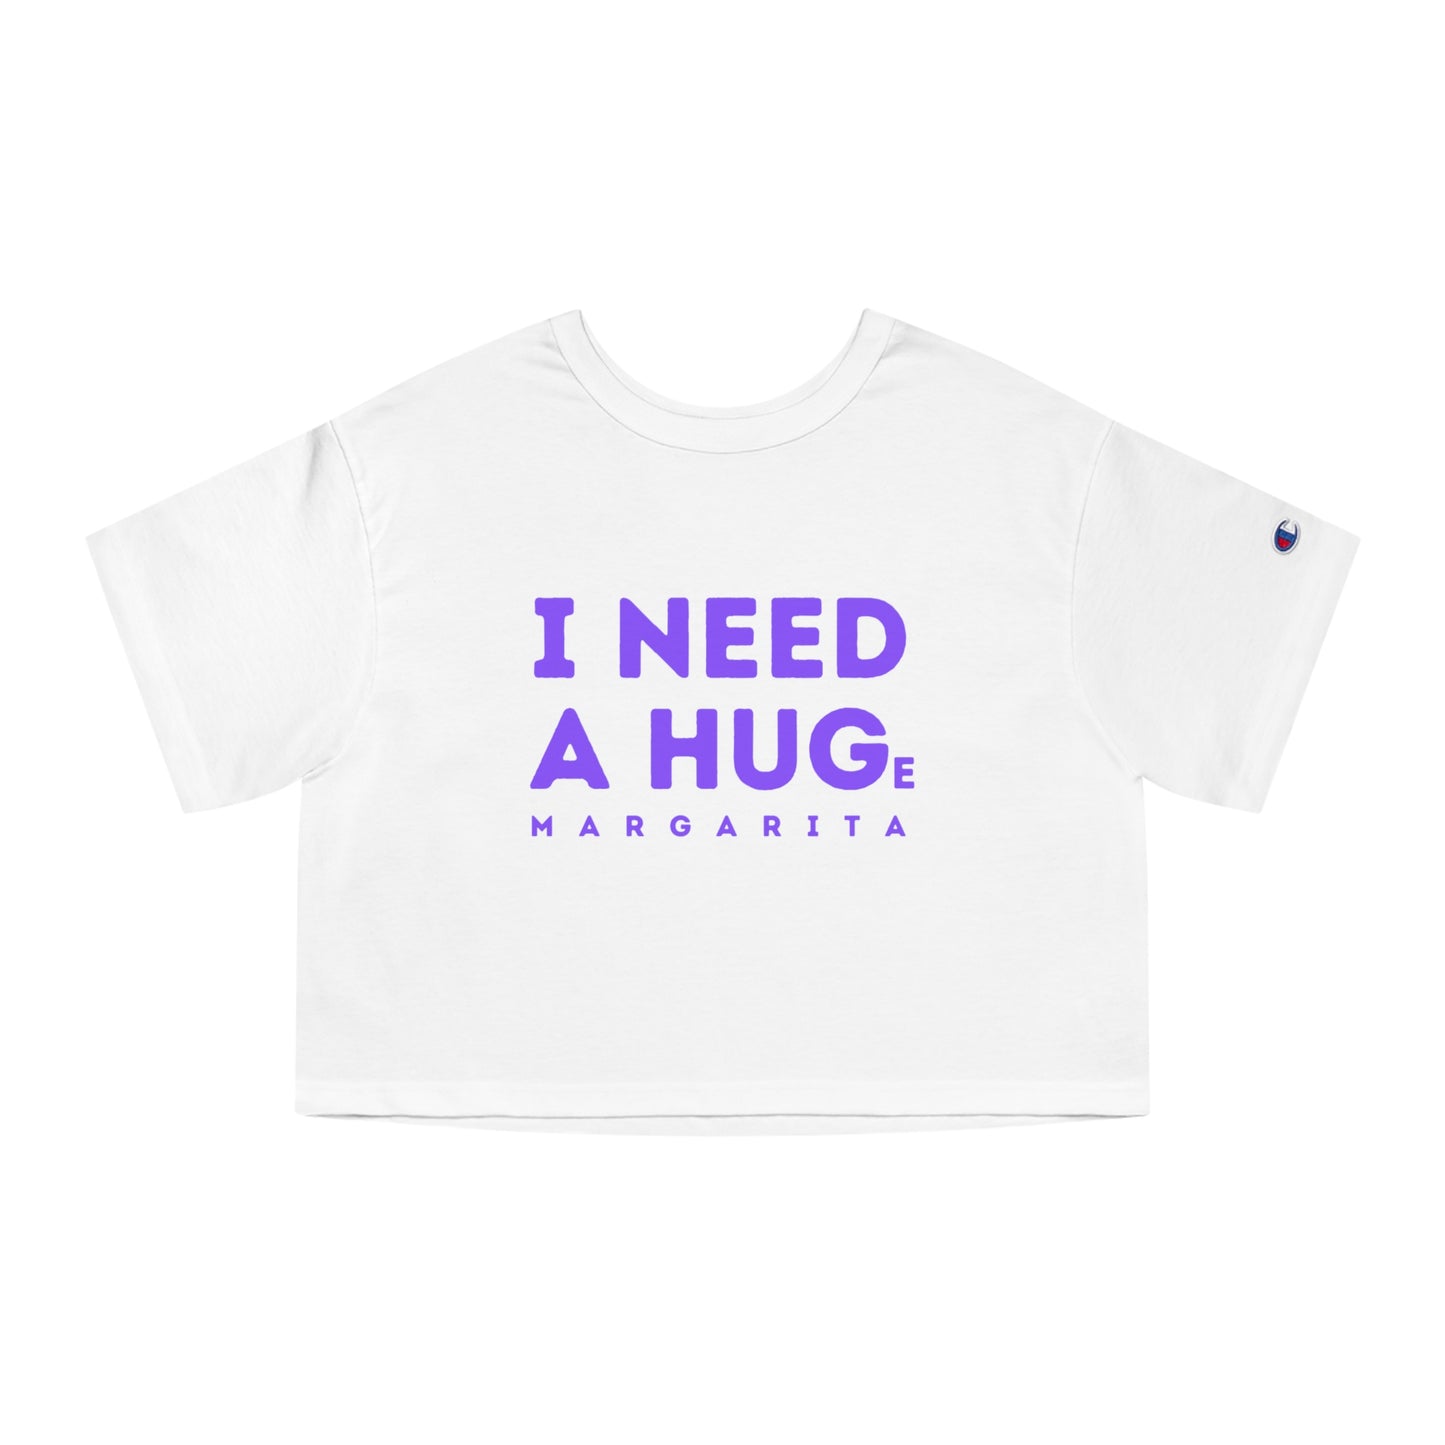 "I need a hug" - Champion crop top